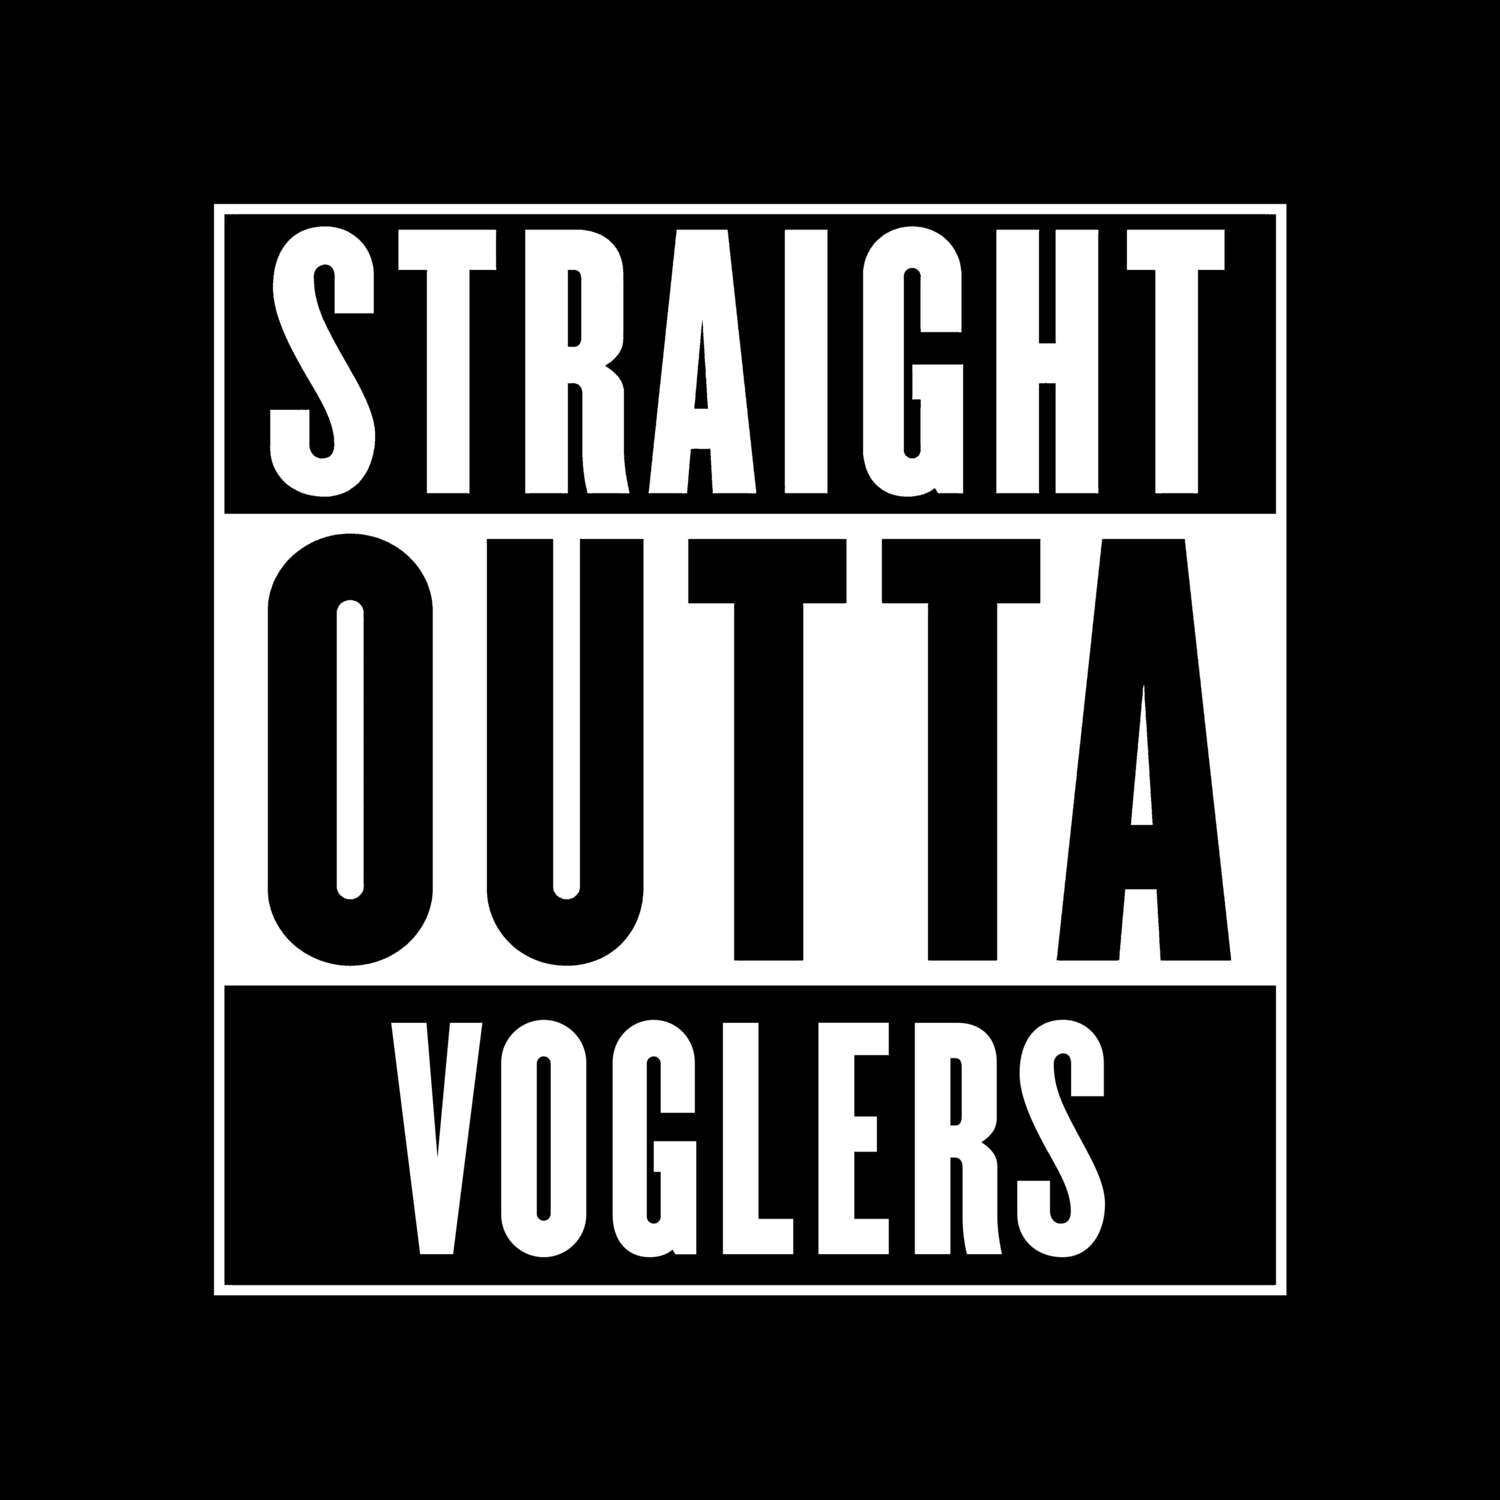 Voglers T-Shirt »Straight Outta«